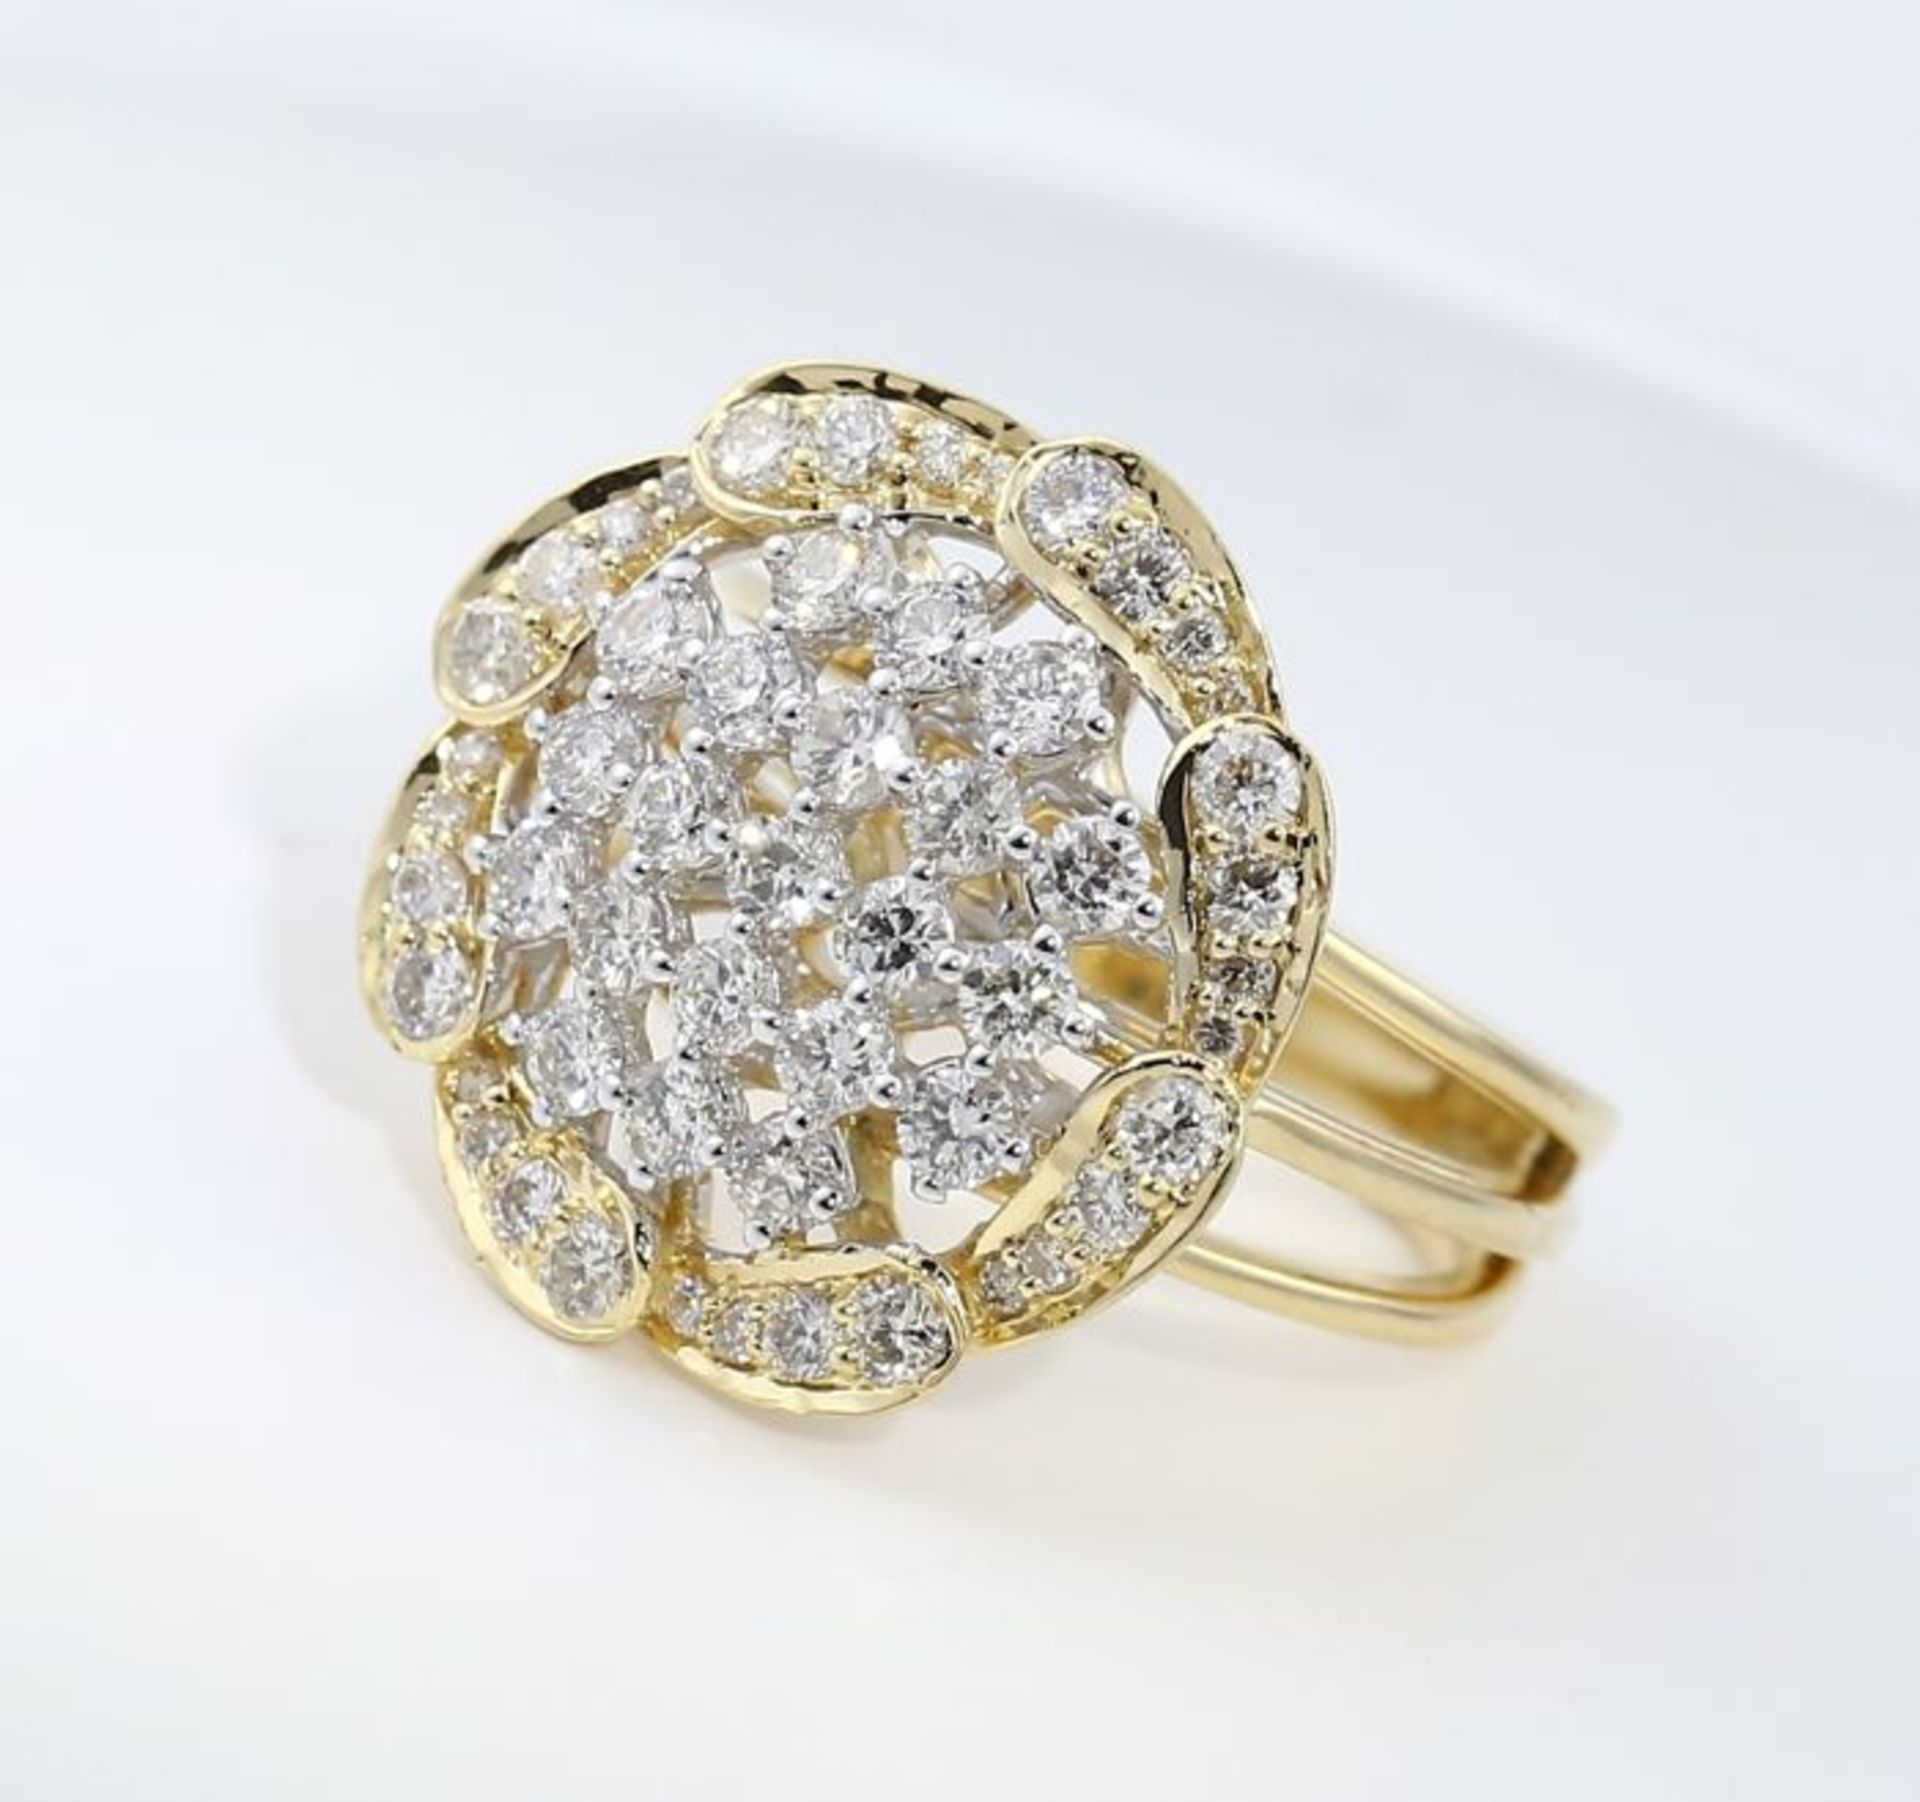 IGI Certified 18 K / 750 Yellow Gold Designer Diamond Ring - Image 3 of 9